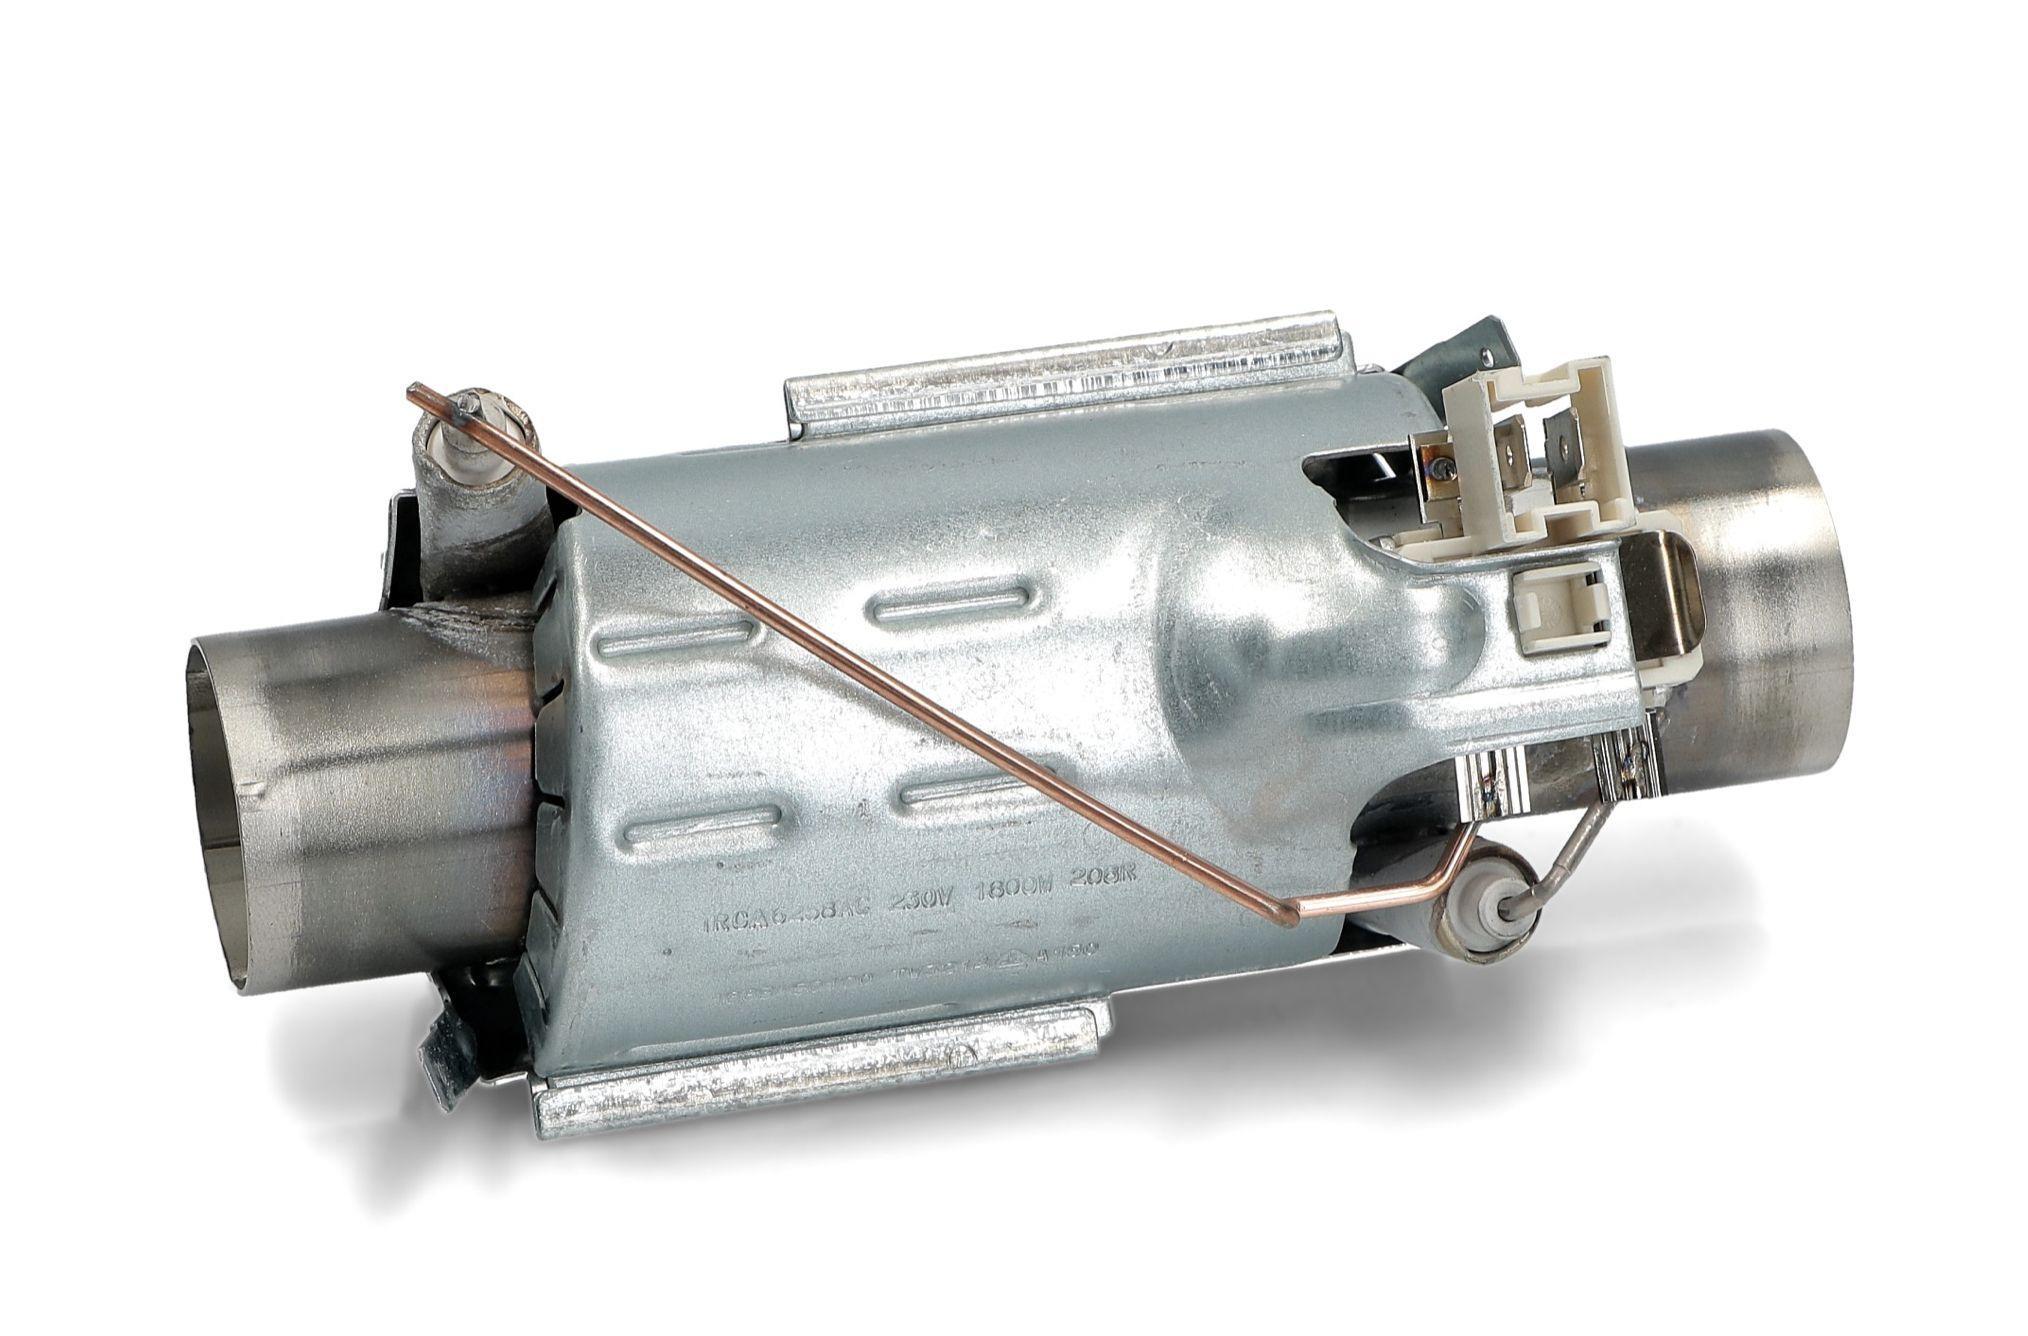 Smeg Baumatic Dishwasher Heater - 1800W Heating Element